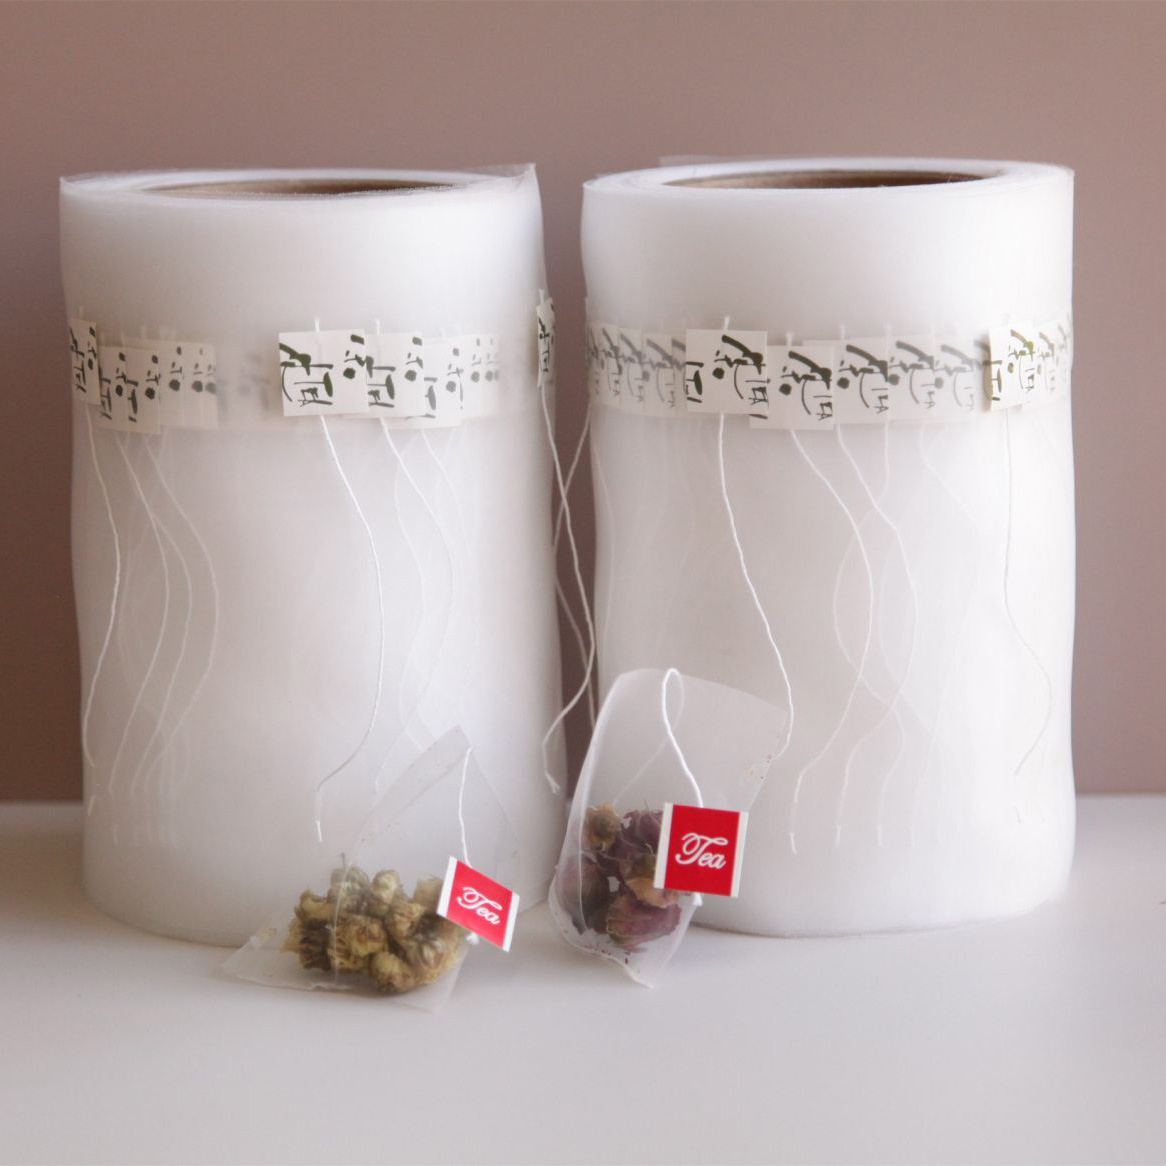 Bolsas de té de fibra de millo con etiquetas